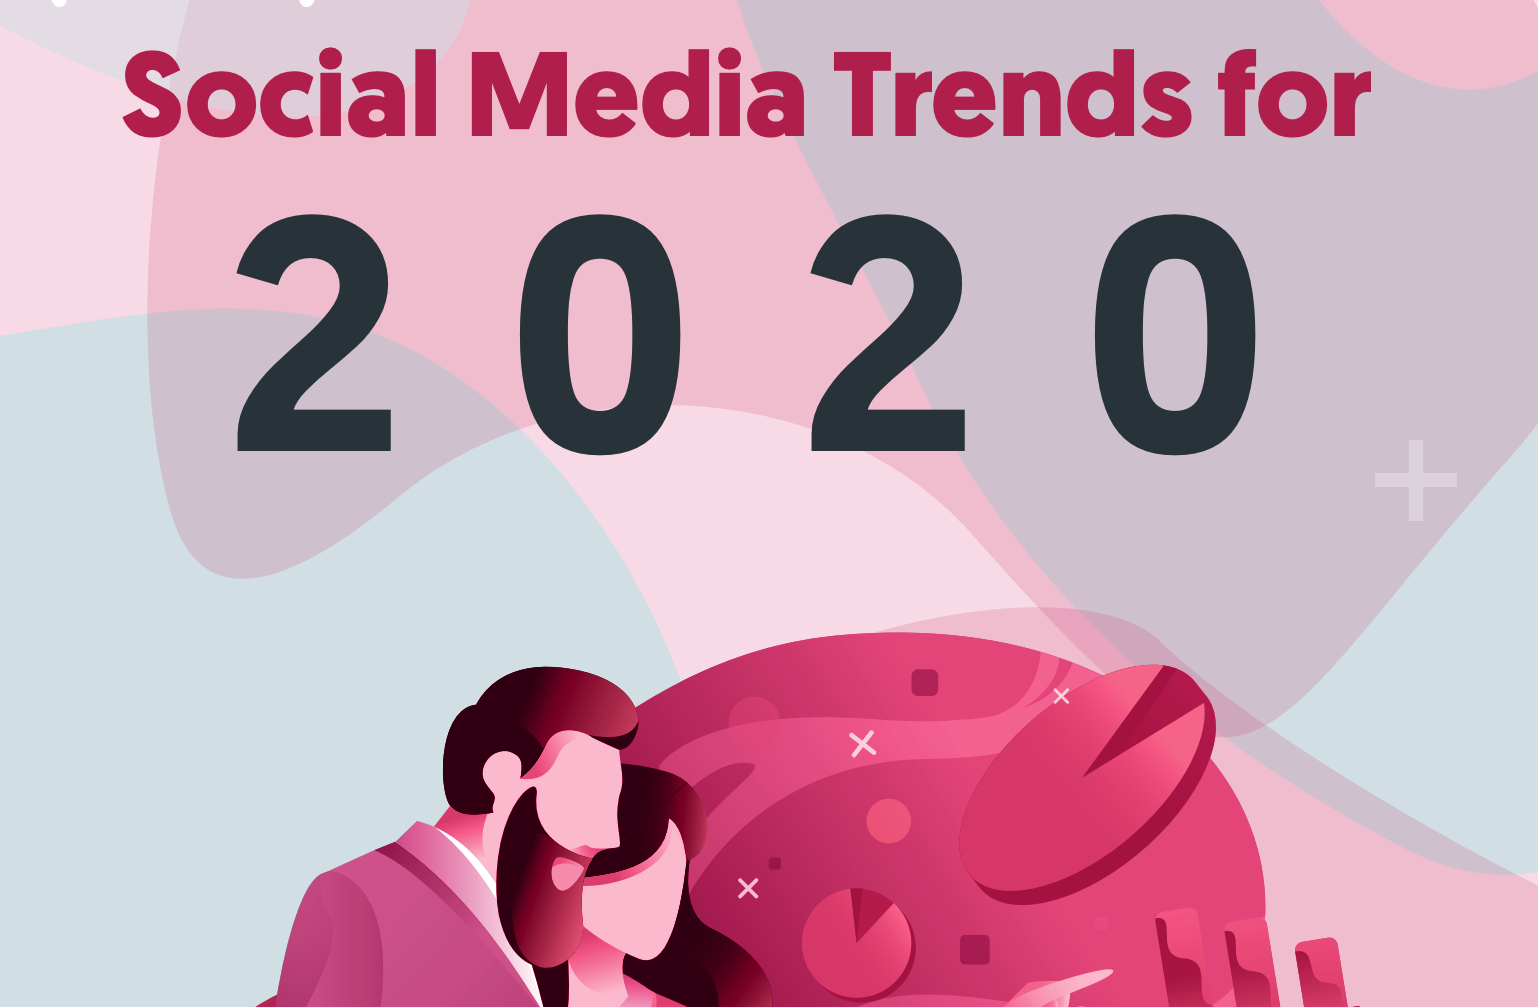 Social Media Trends for 2020